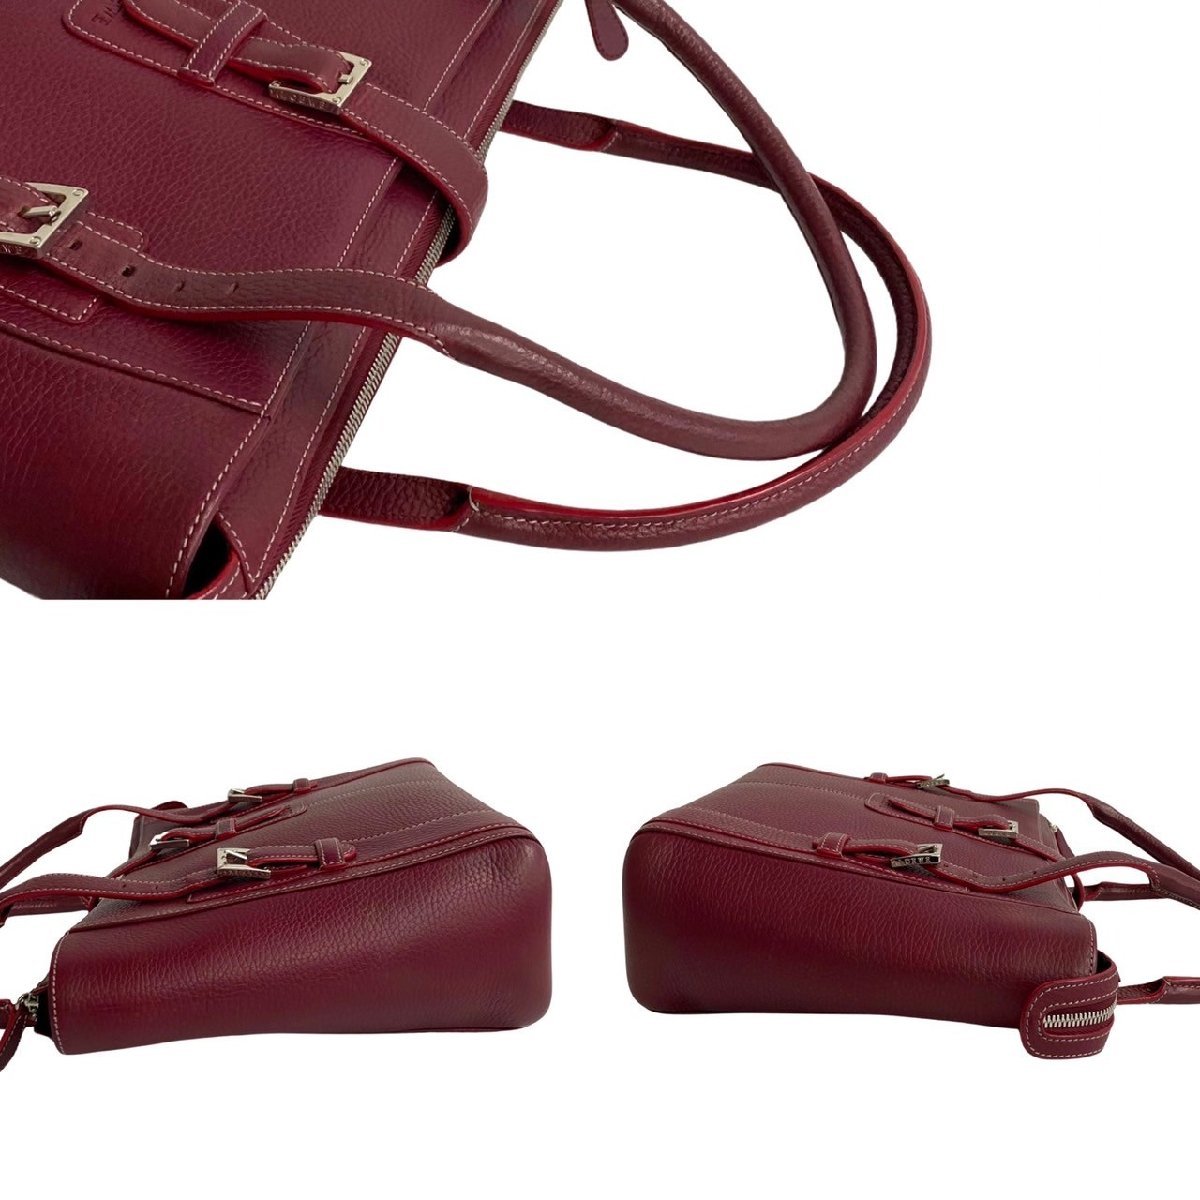  почти не использовался редкий товар LOEWE Loewe Logo печать senda кожа натуральная кожа ручная сумочка большая сумка Mini сумка "Boston bag" бордо красный 18590